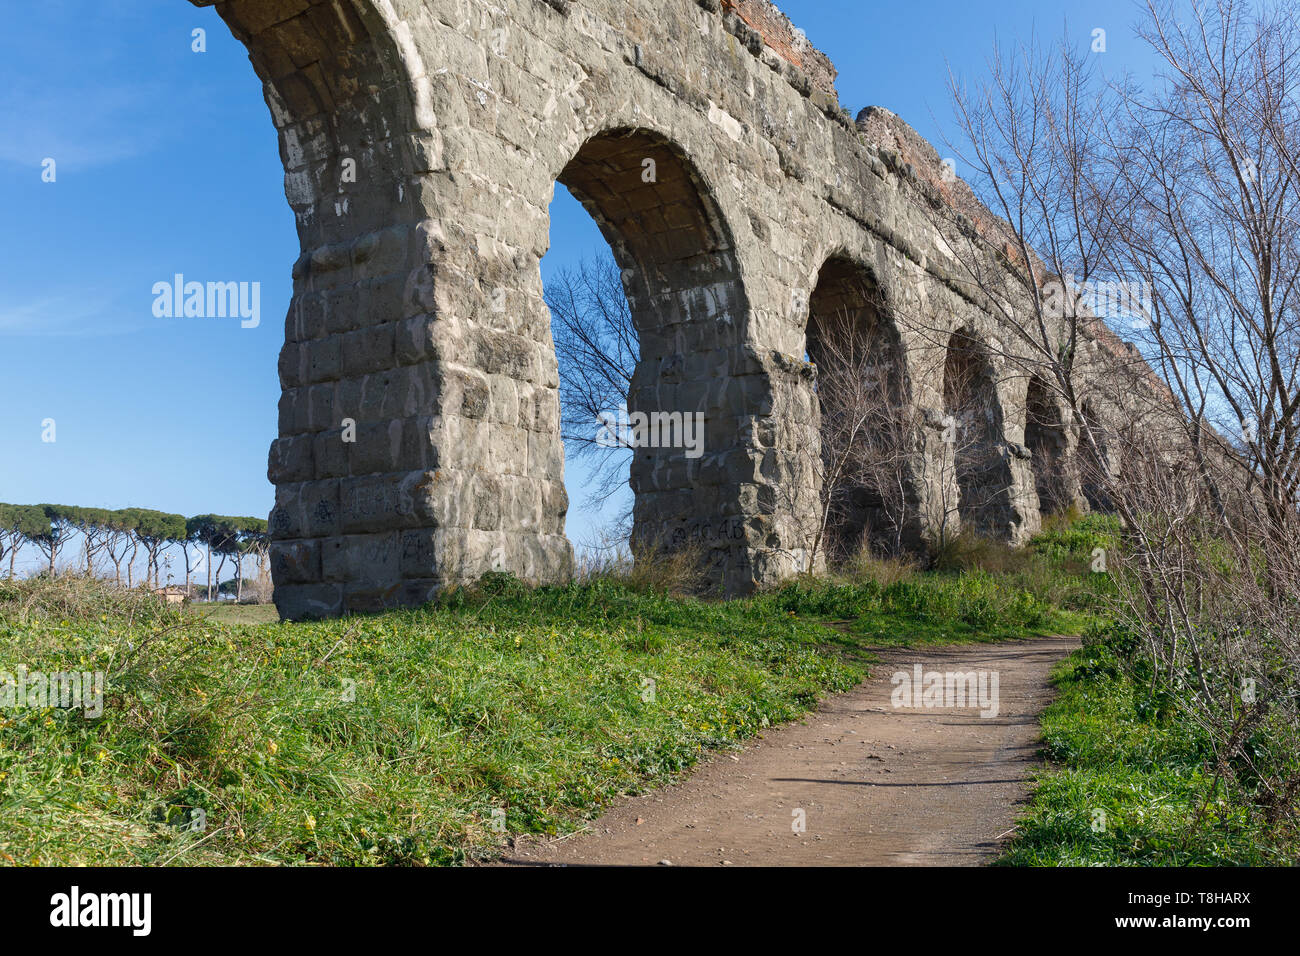 Arcate di un antico acquedotto romano, in blocchi di tufo. Il percorso si snoda lungo la proprietà in un parco verde nella periferia di Roma. Foto Stock